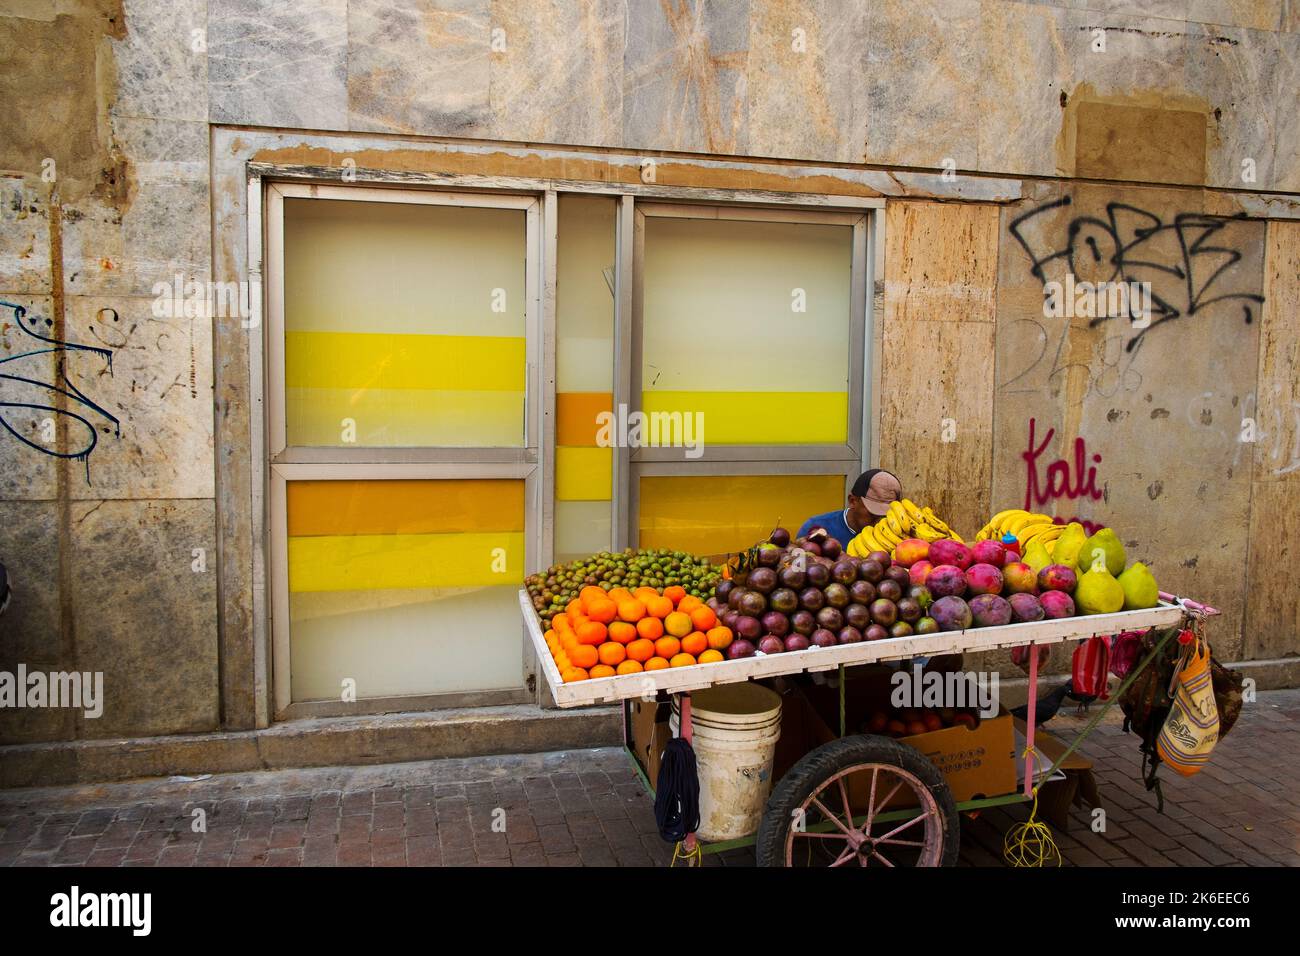 Obststand, gelbe Wand und Fenster, Cartagena, Kolumbien Stockfoto